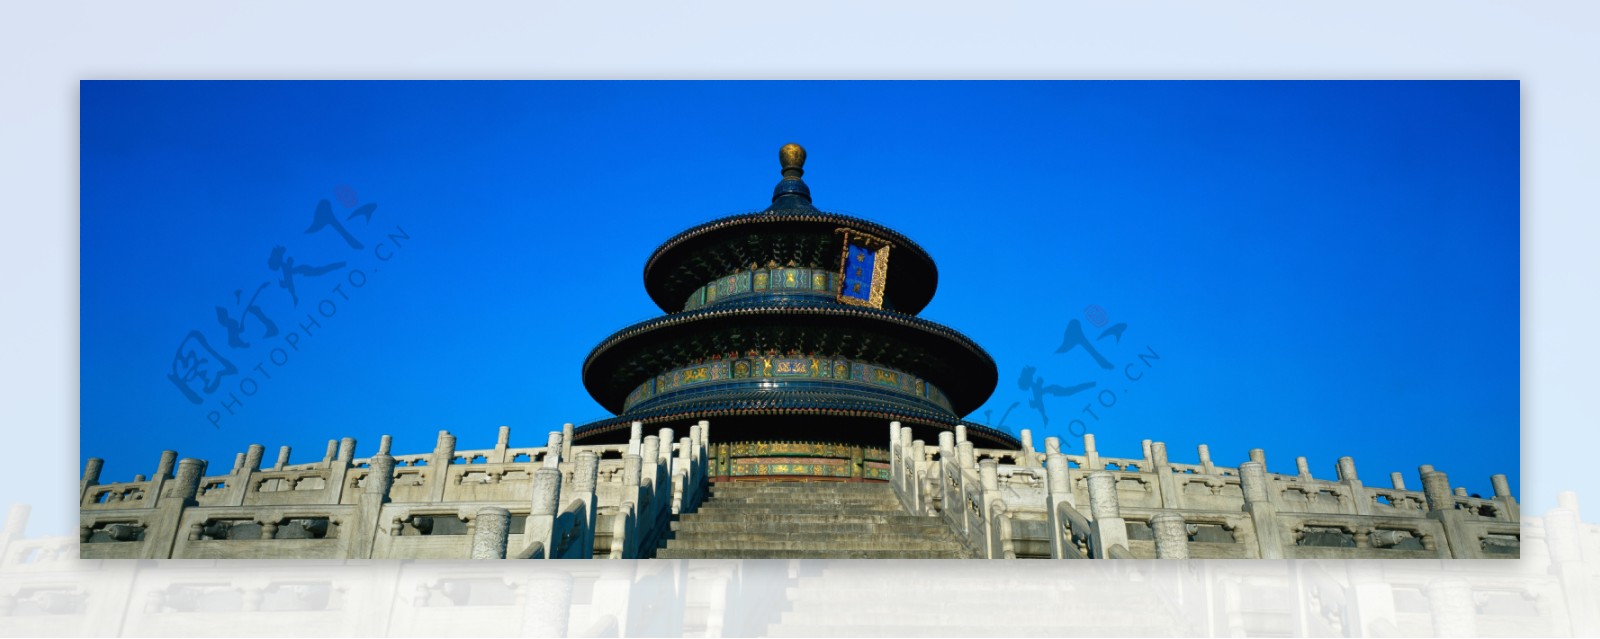 北京天坛皇家建筑明清风格仰视图片天坛资料